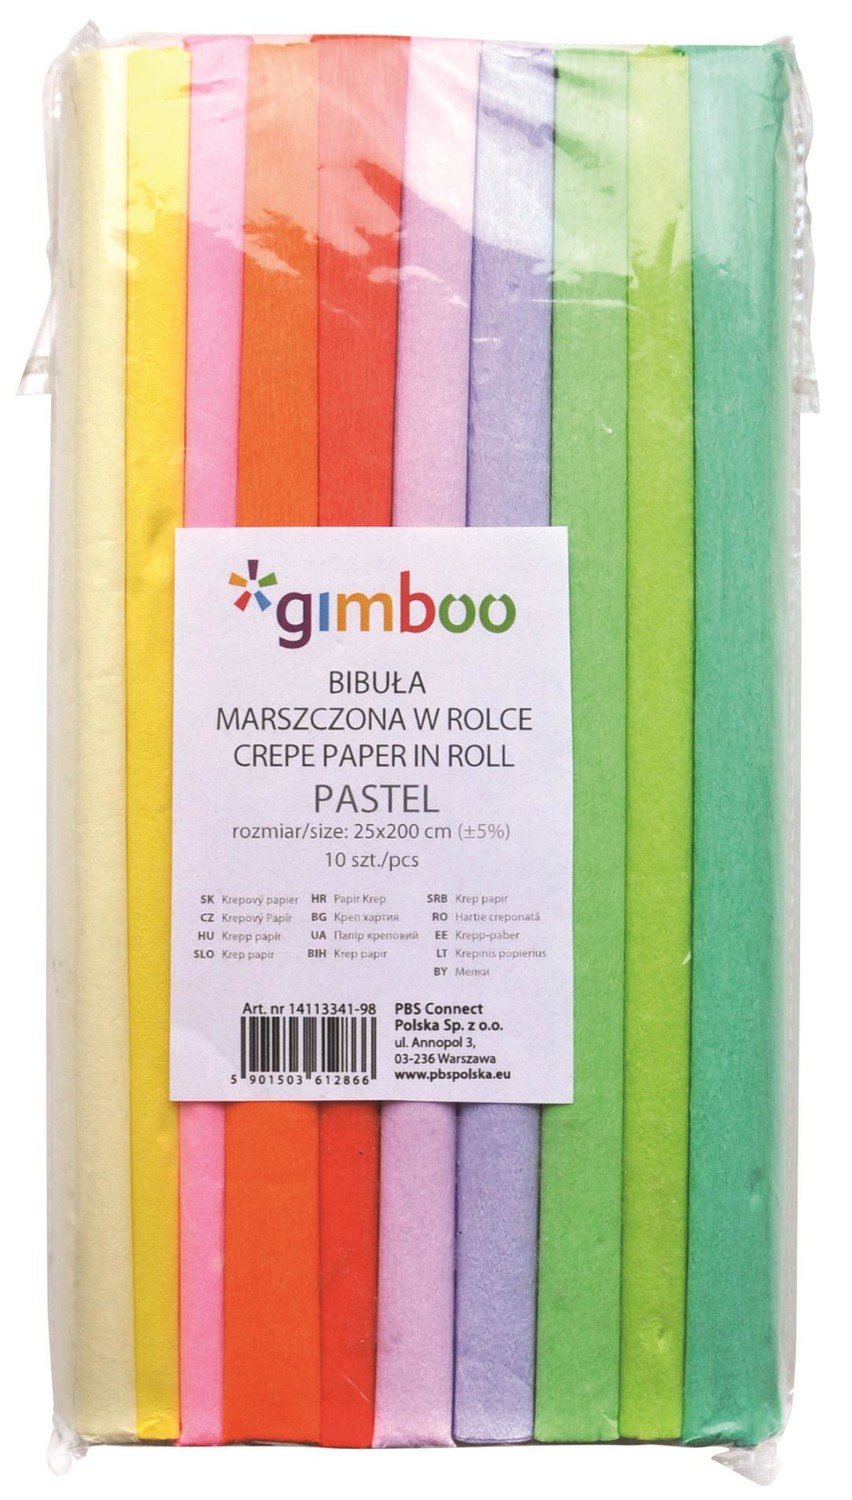 Gimboo Krepový papír Gimboo - role 25 x 200 cm, mix pastelových barev, 10 ks